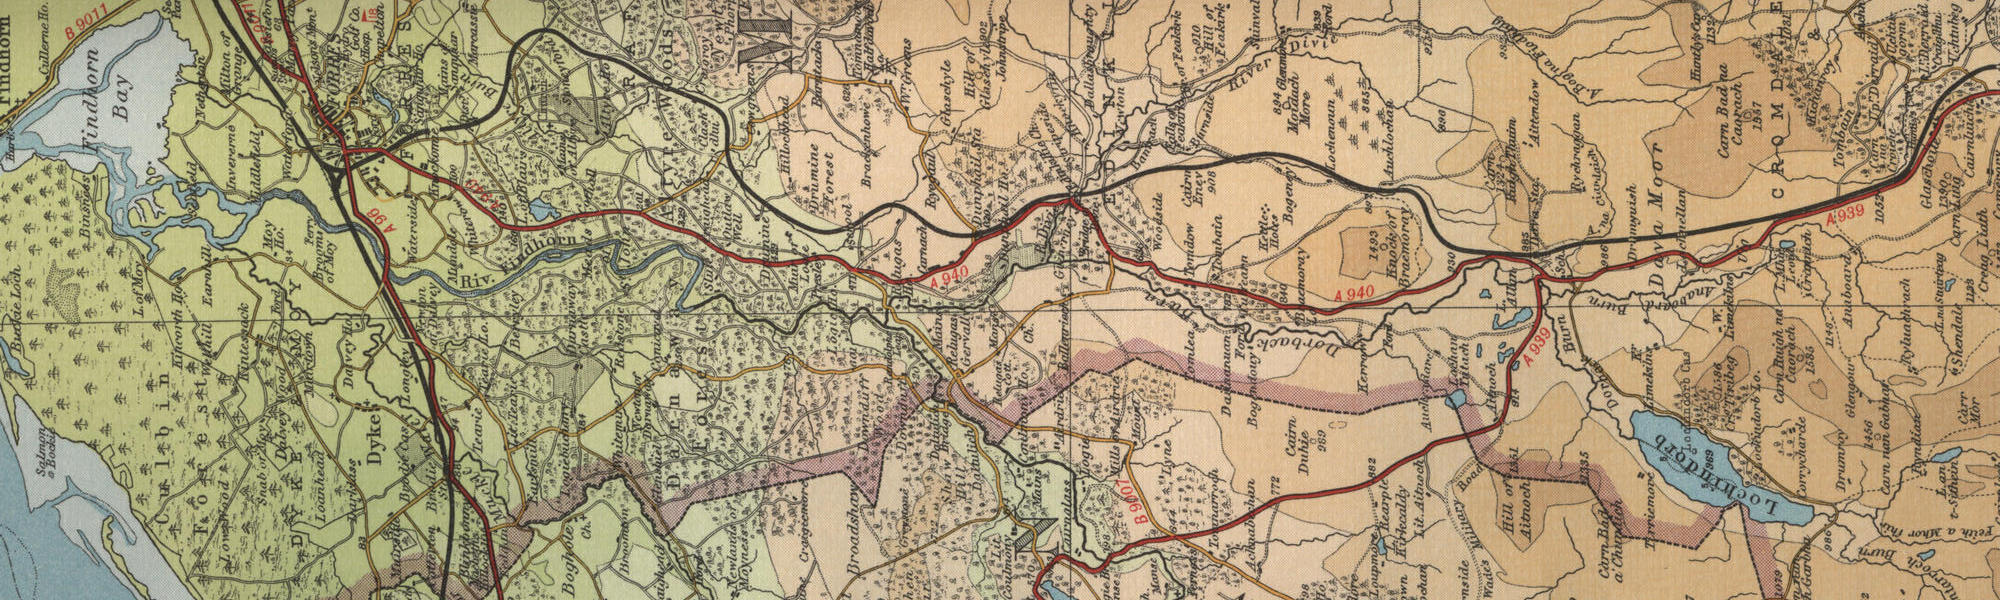 River Findhorn map